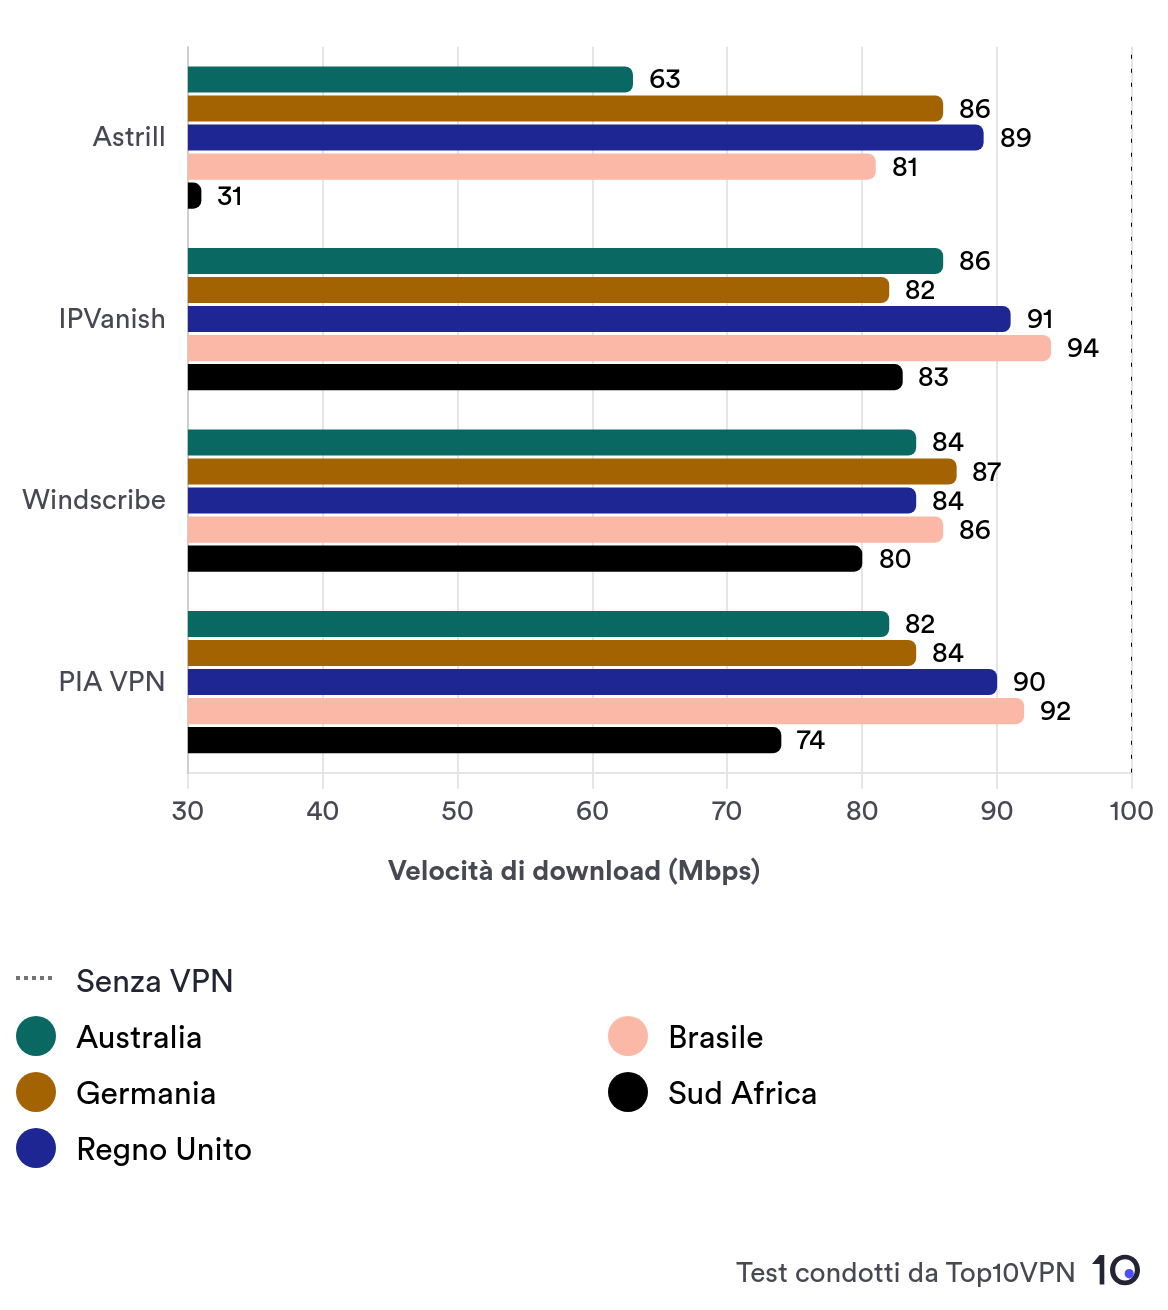 Grafico della velocità di Astrill a confronto con IPVanish, Windscribe e PIA